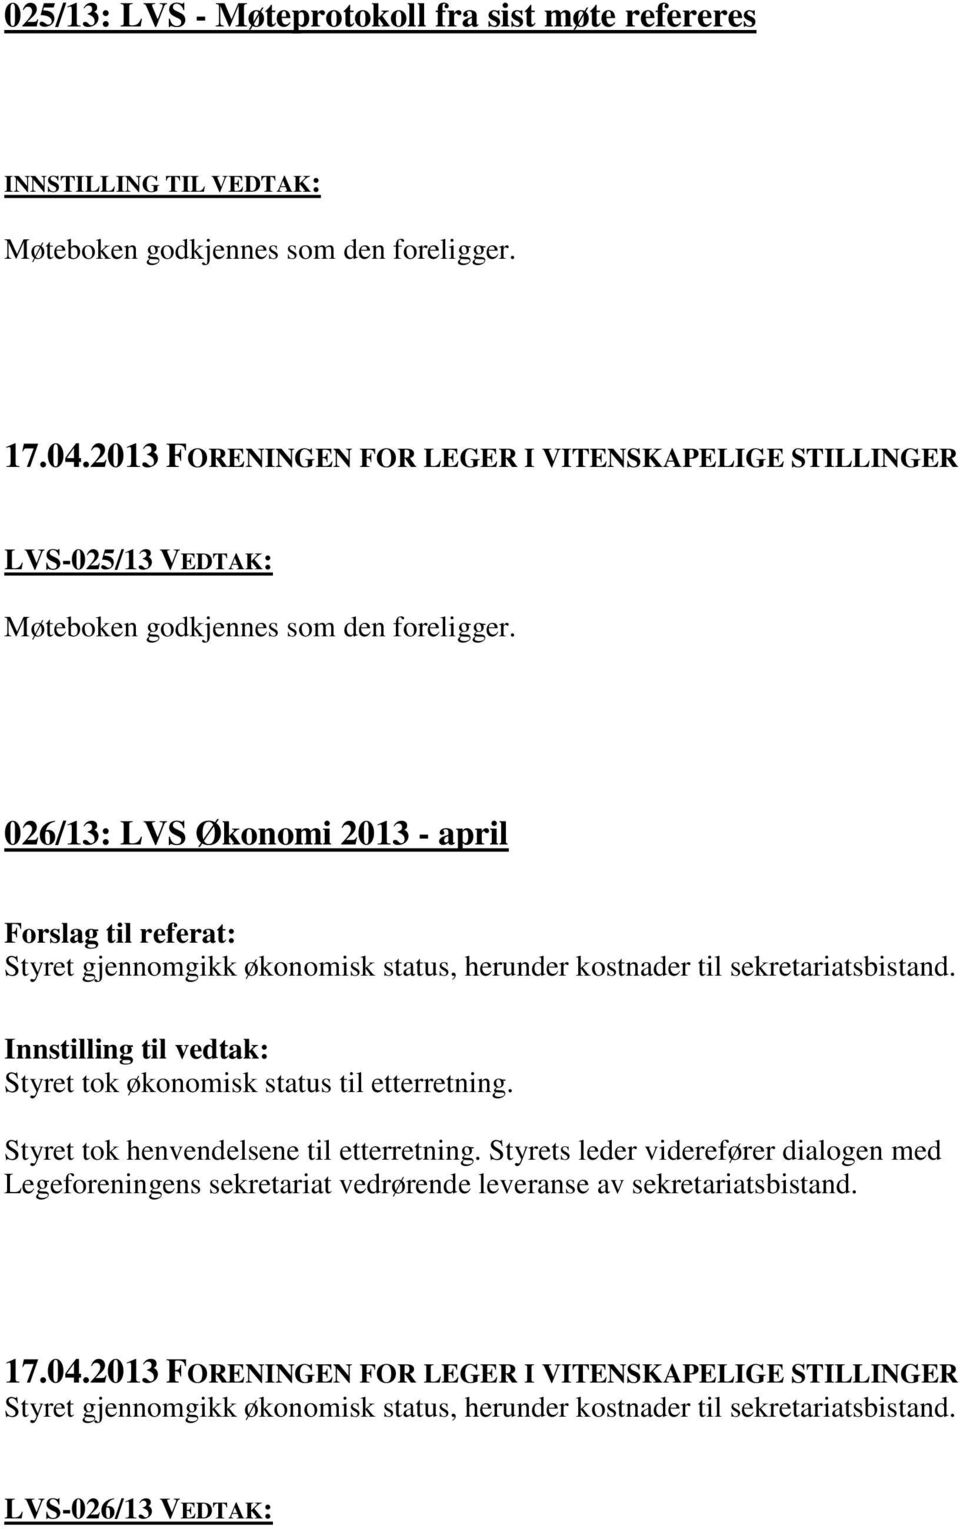 026/13: LVS Økonomi 2013 - april Styret gjennomgikk økonomisk status, herunder kostnader til sekretariatsbistand.